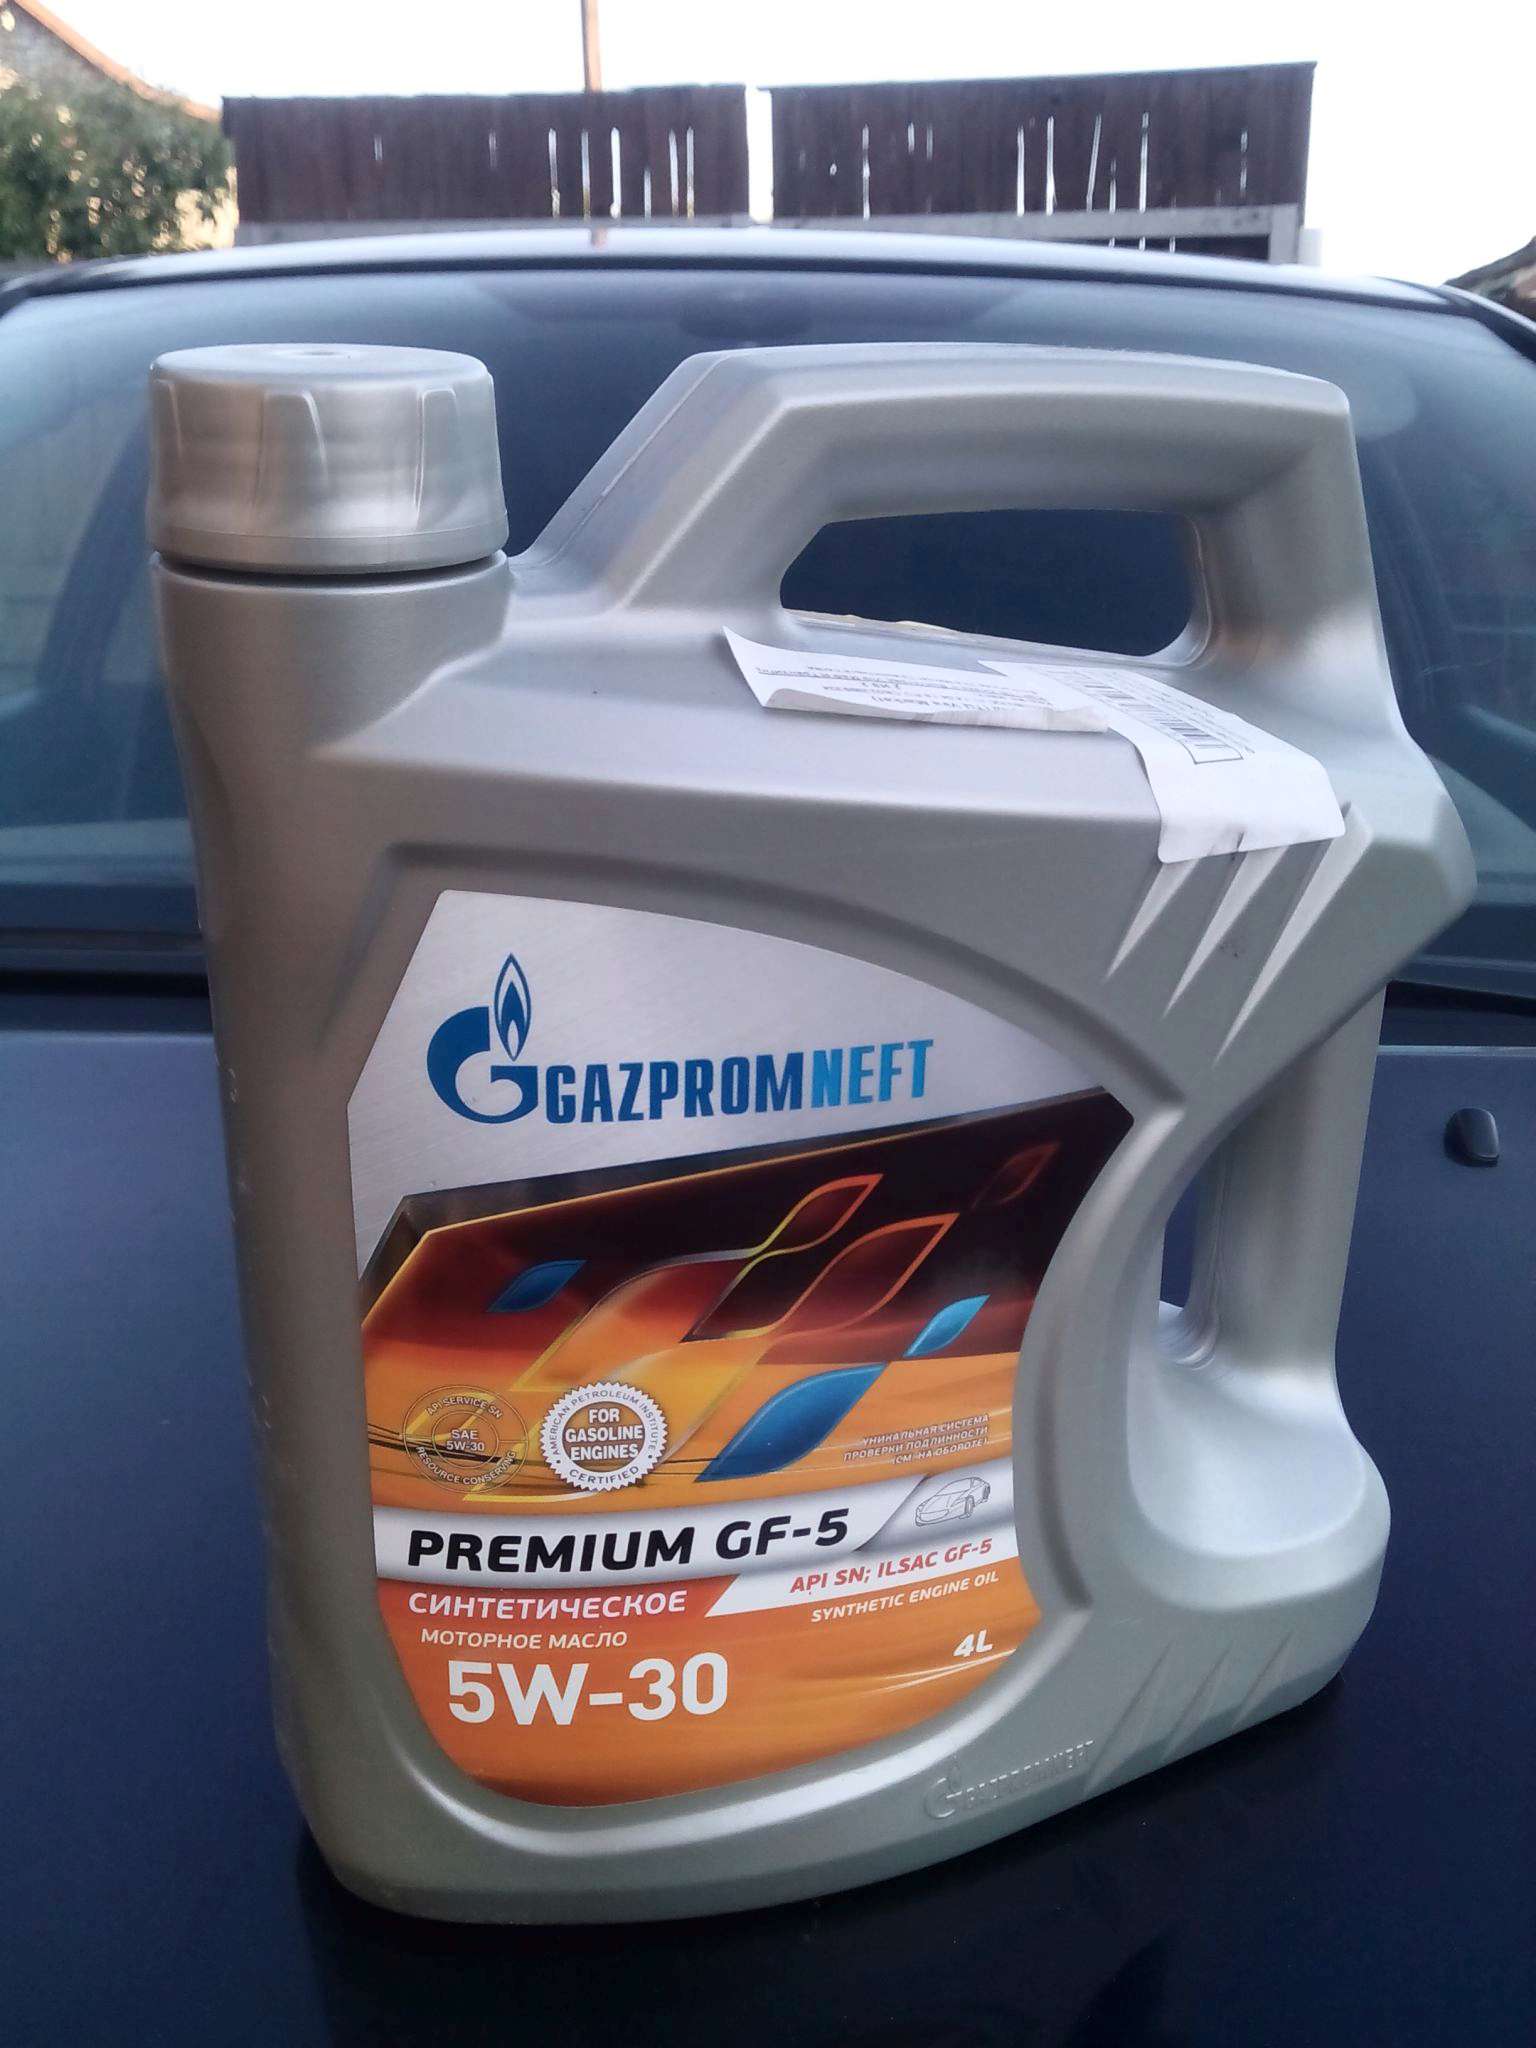 Масло gazpromneft premium 5w 30. Gazpromneft Premium gf-5 5w-30. 253142222 Gazpromneft Premium gf-5 5w-30 4л. Масло моторное 5w30 Газпромнефть.